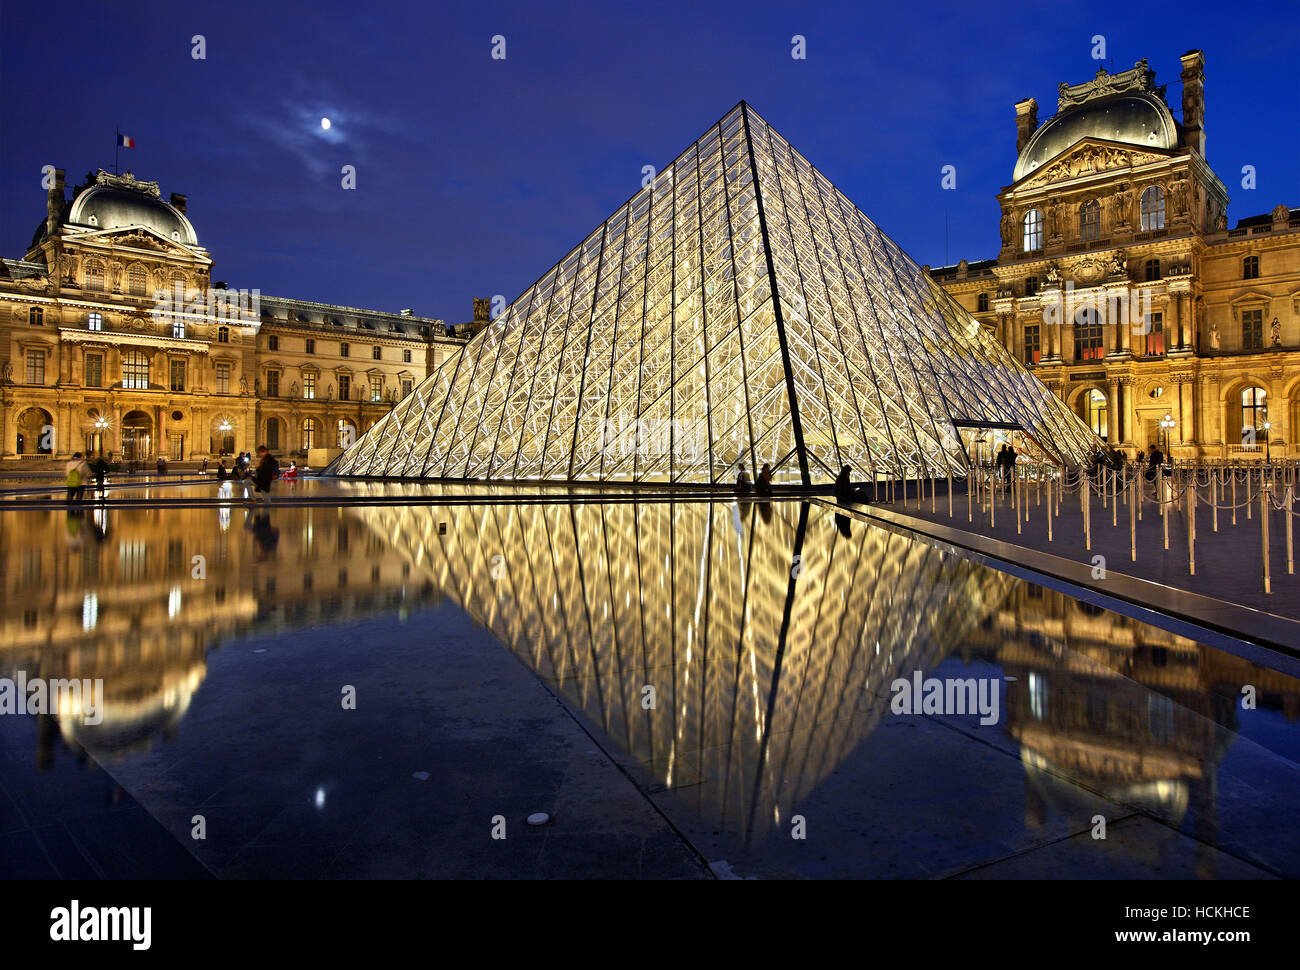 La pyramide de verre (architecte : I.M. Pei) de Louvre Museum (Musée du Louvre), Paris, France. Banque D'Images